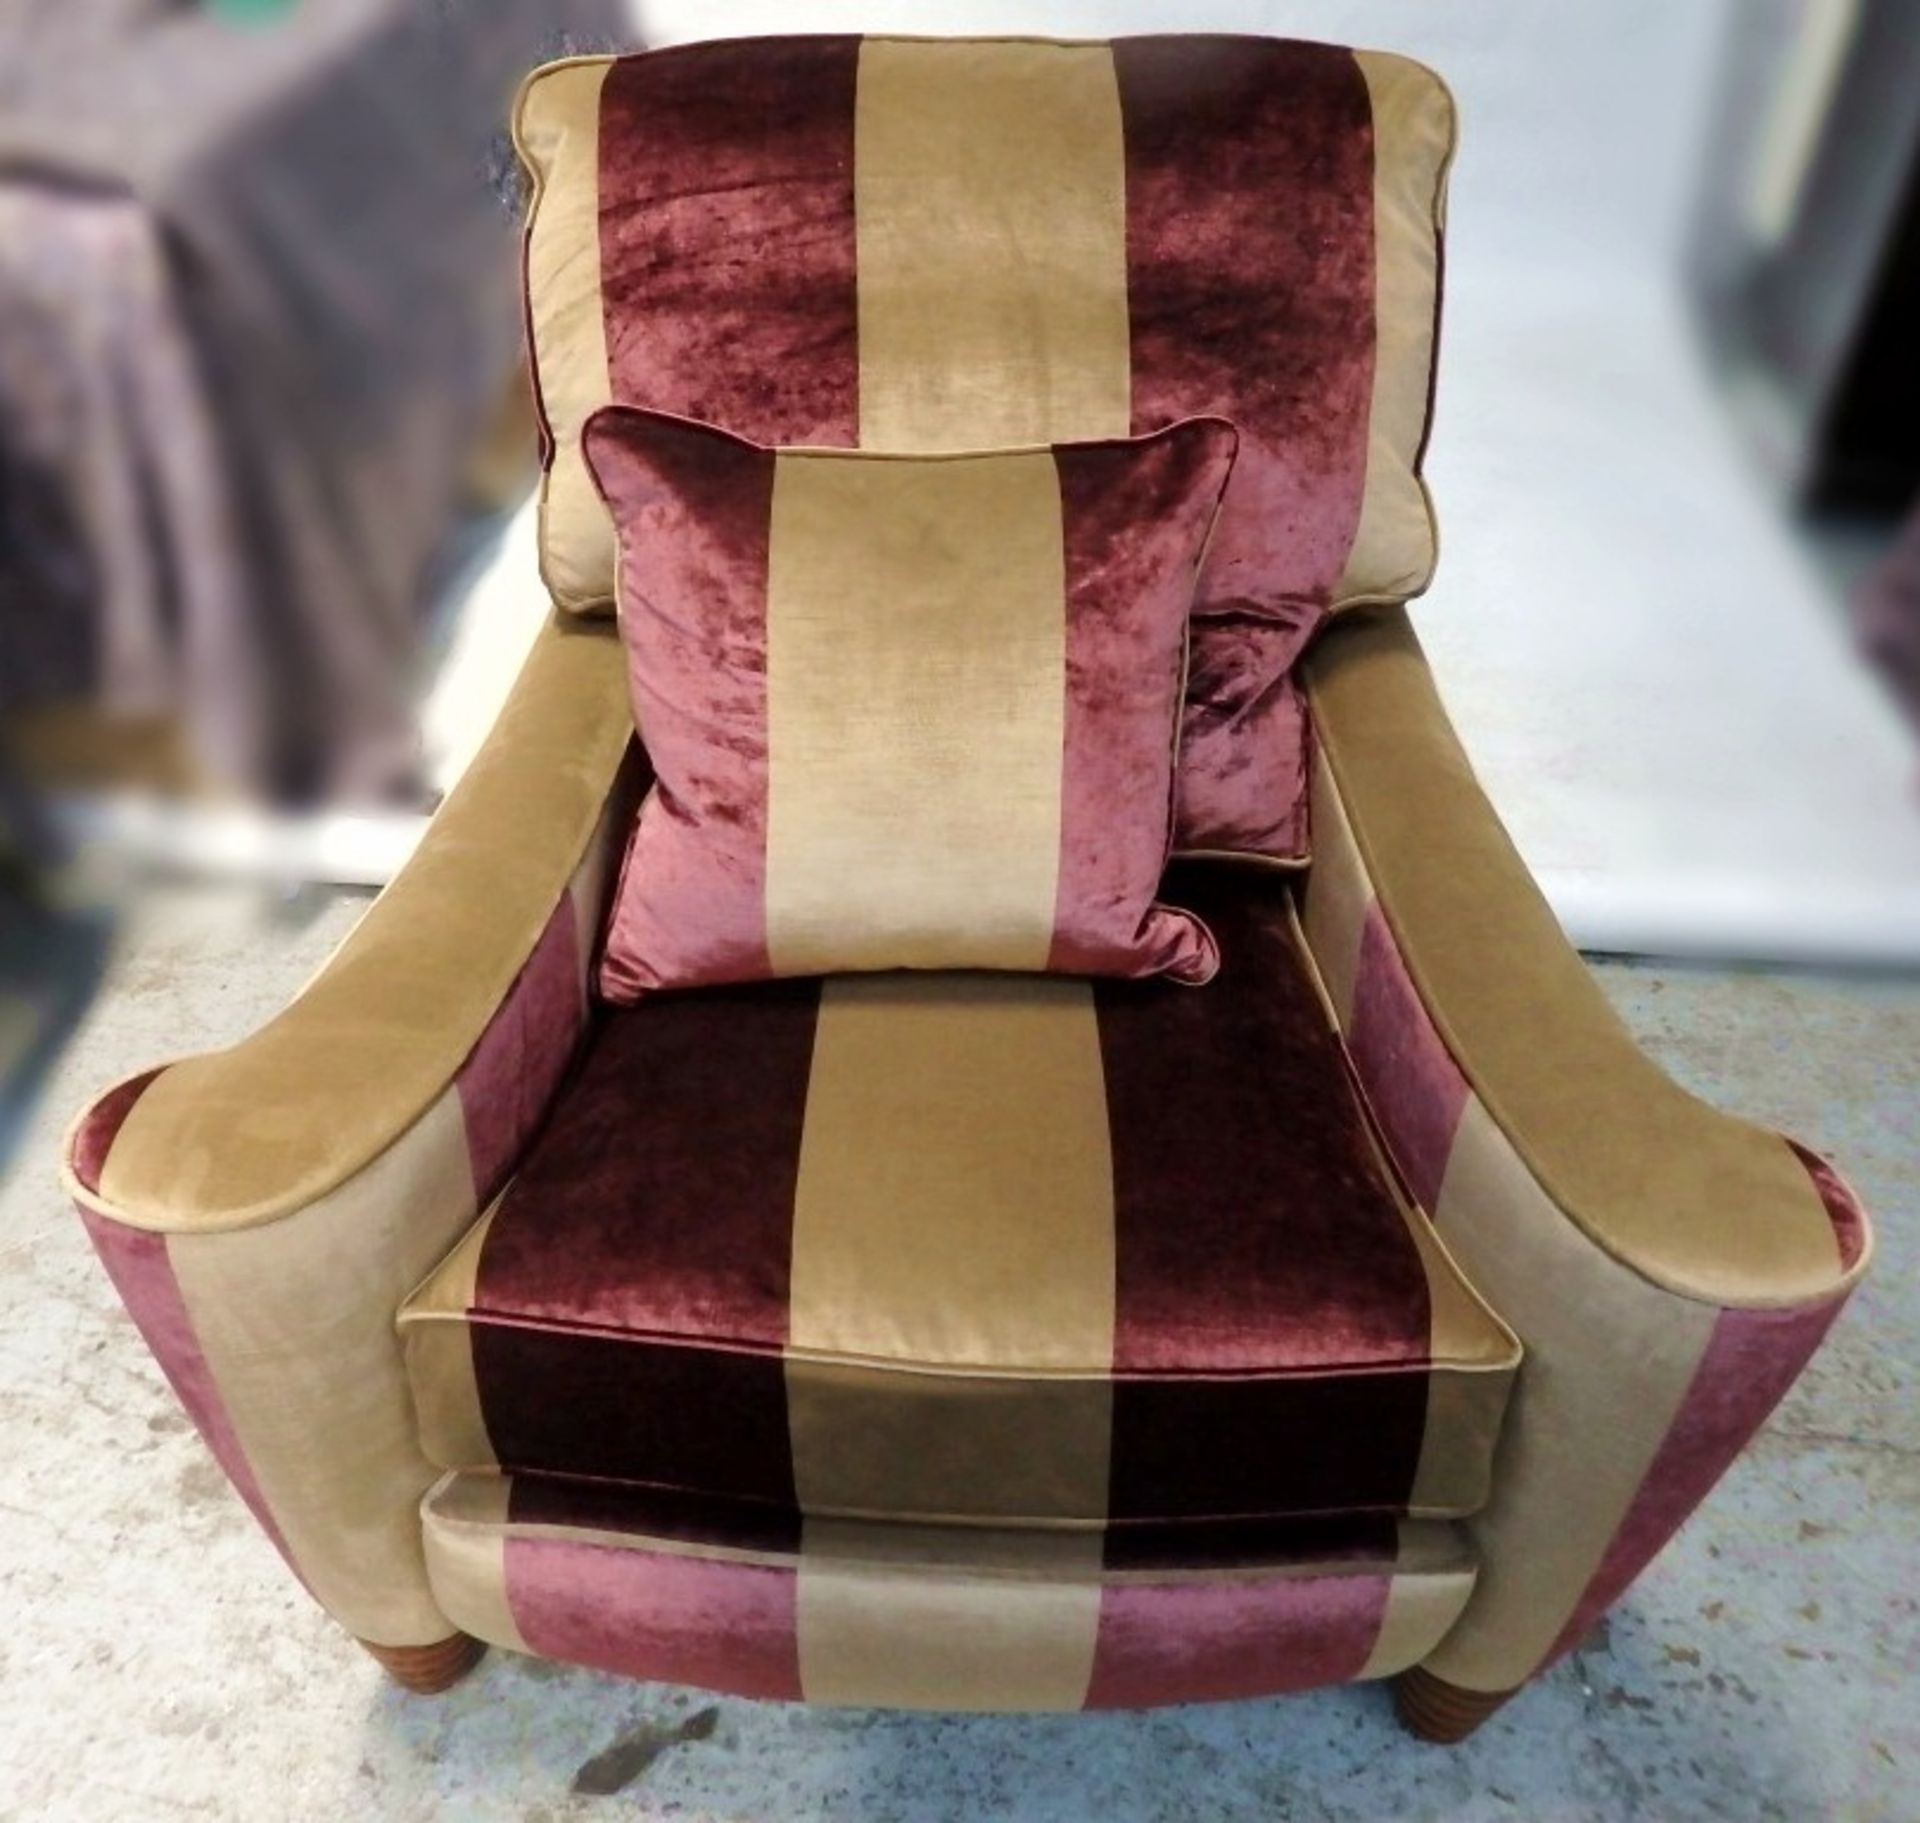 1 x Duresta Premium Designer Striped Chair - CL050 - Ref: JMH011 - W96 x D106 x H96 - Location: